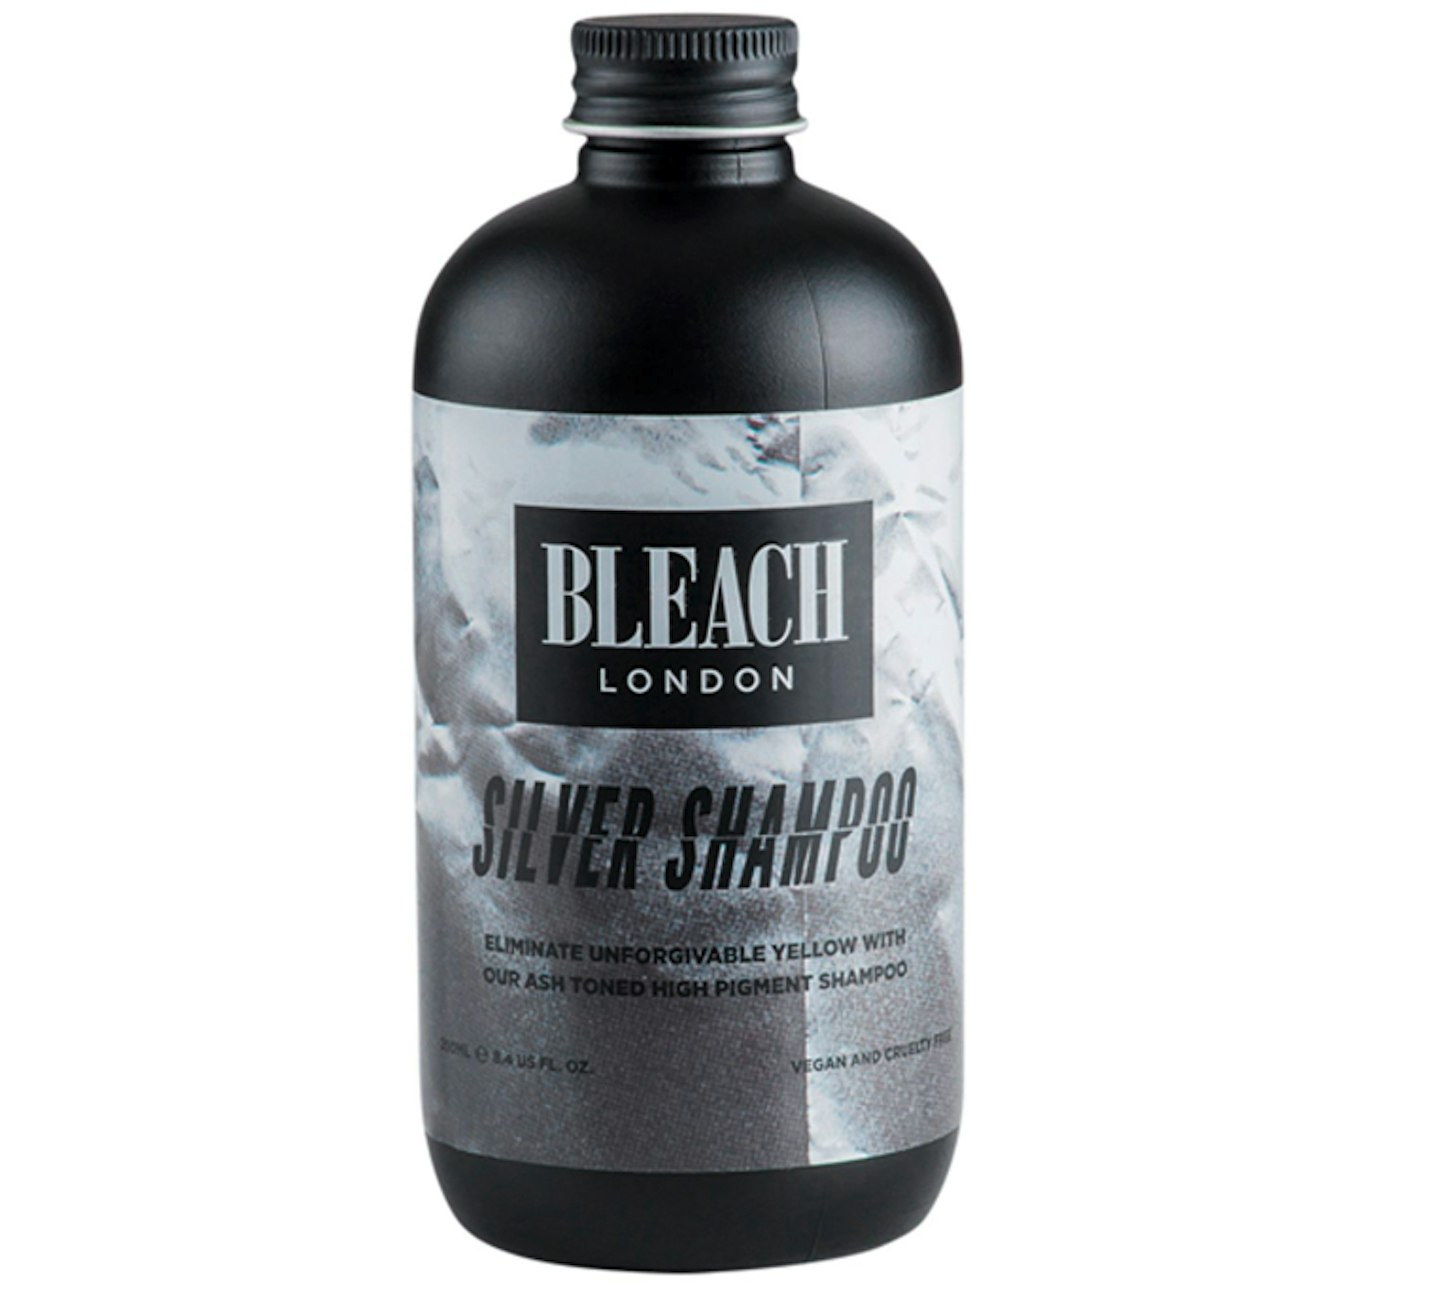 Bleach Silver Shampoo, £7.50